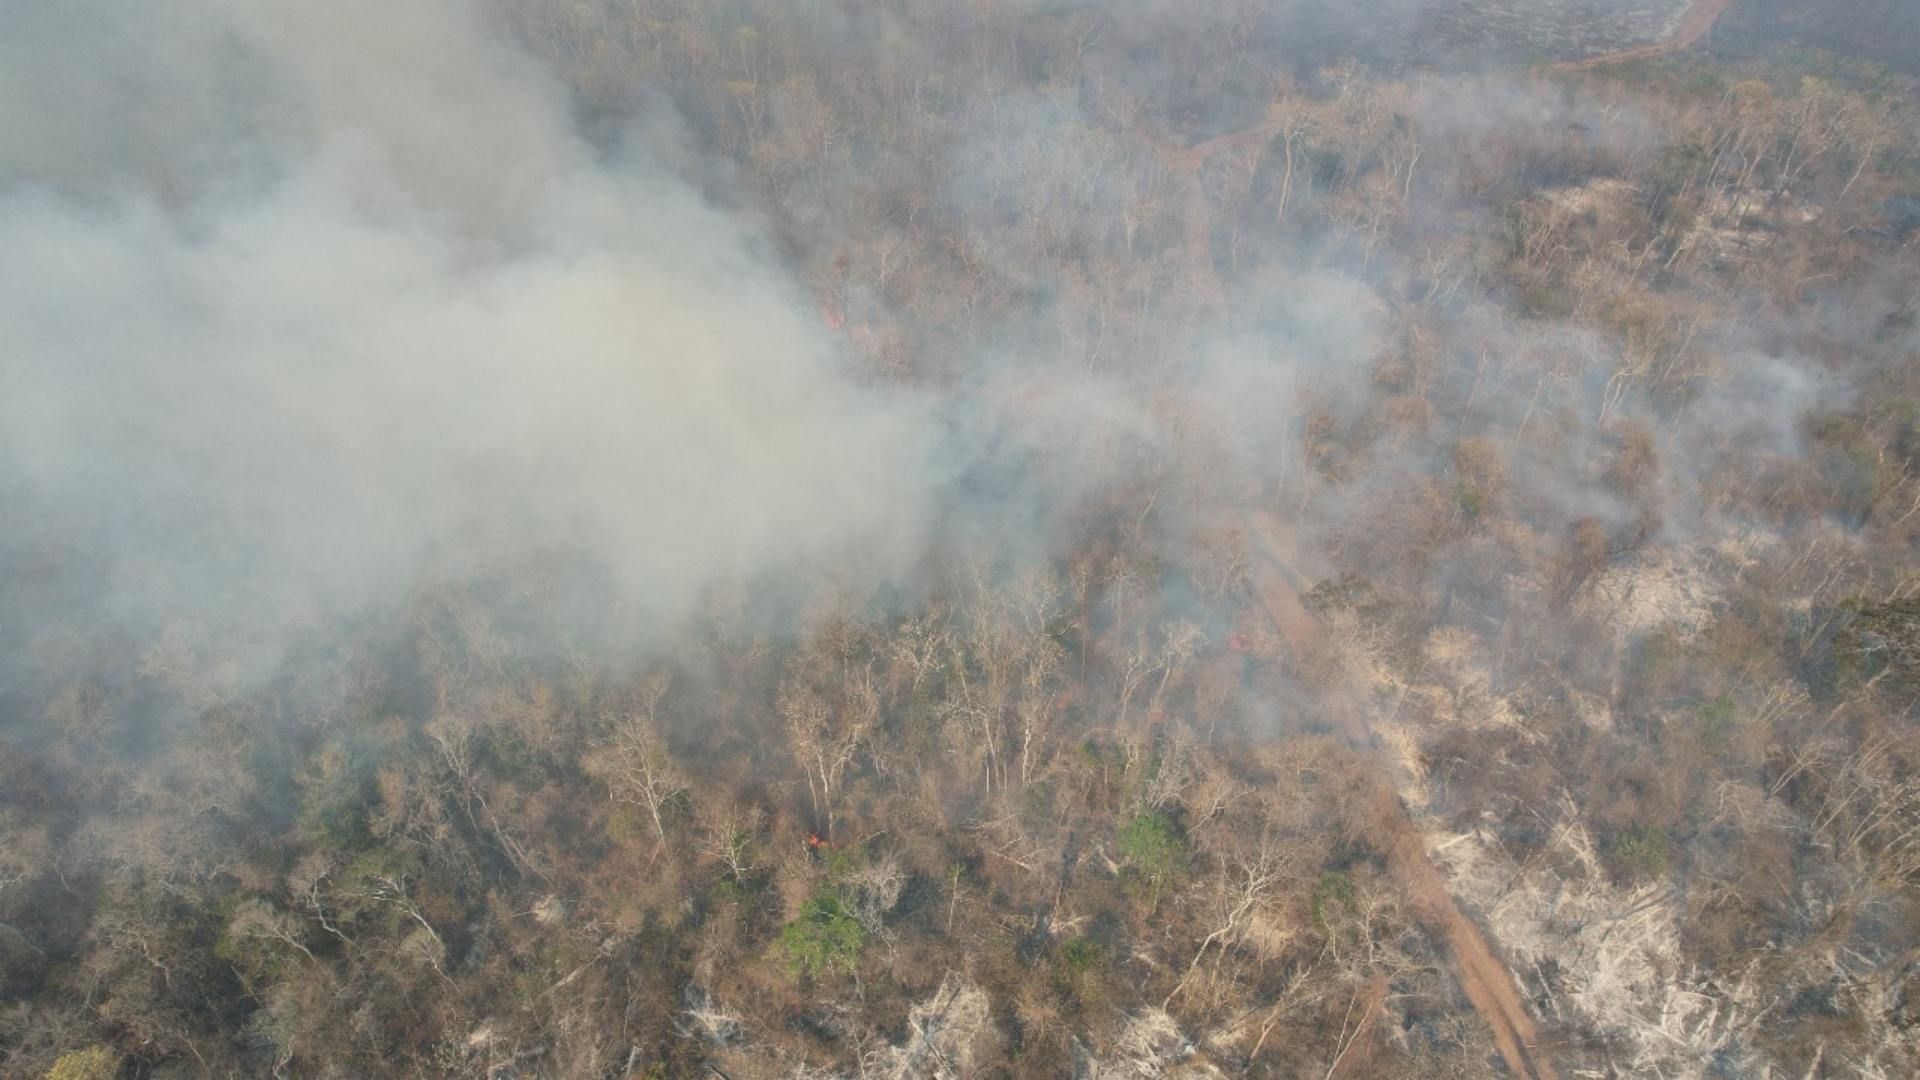 5 Incendios Forestales Arrasan con Más de 4,500 Hectáreas de Selvas y Pastizales en Campeche